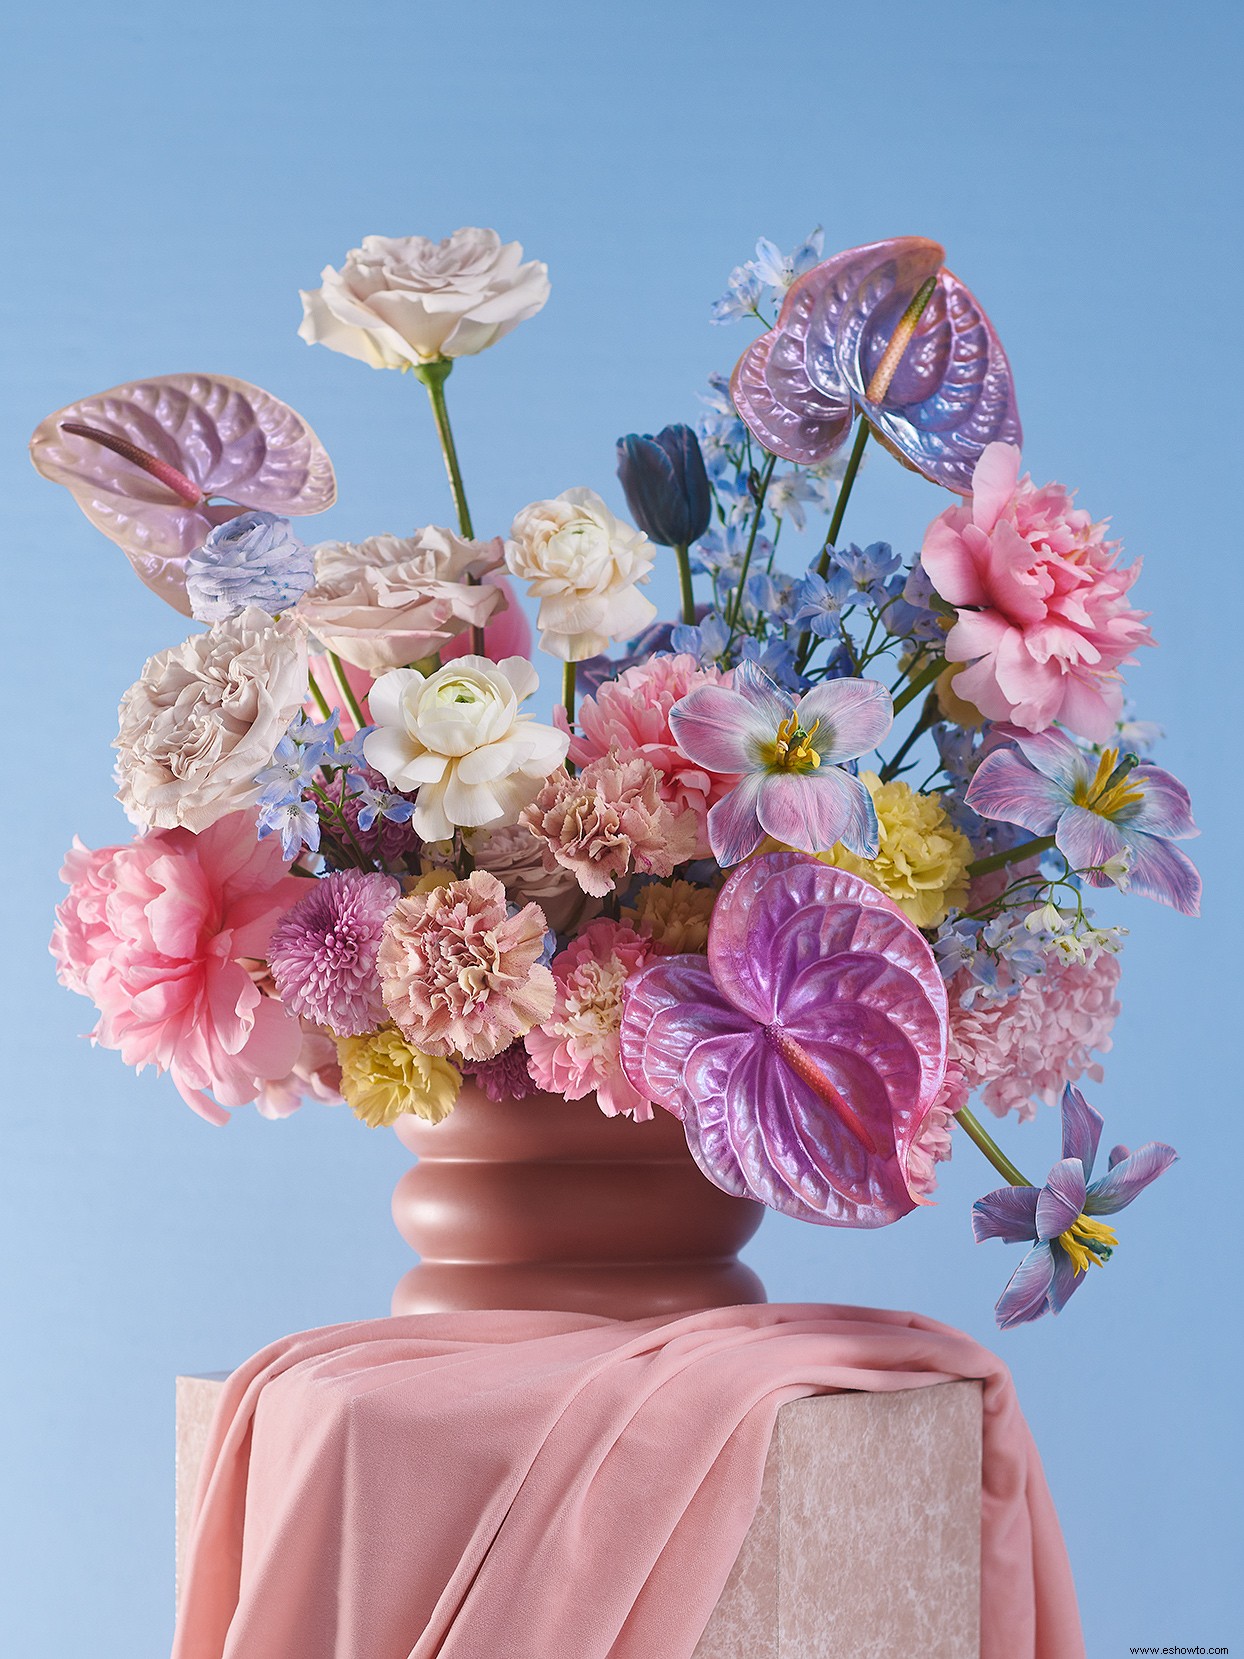 A la moda:flores teñidas, secas y pintadas audaces para arreglos inolvidables 